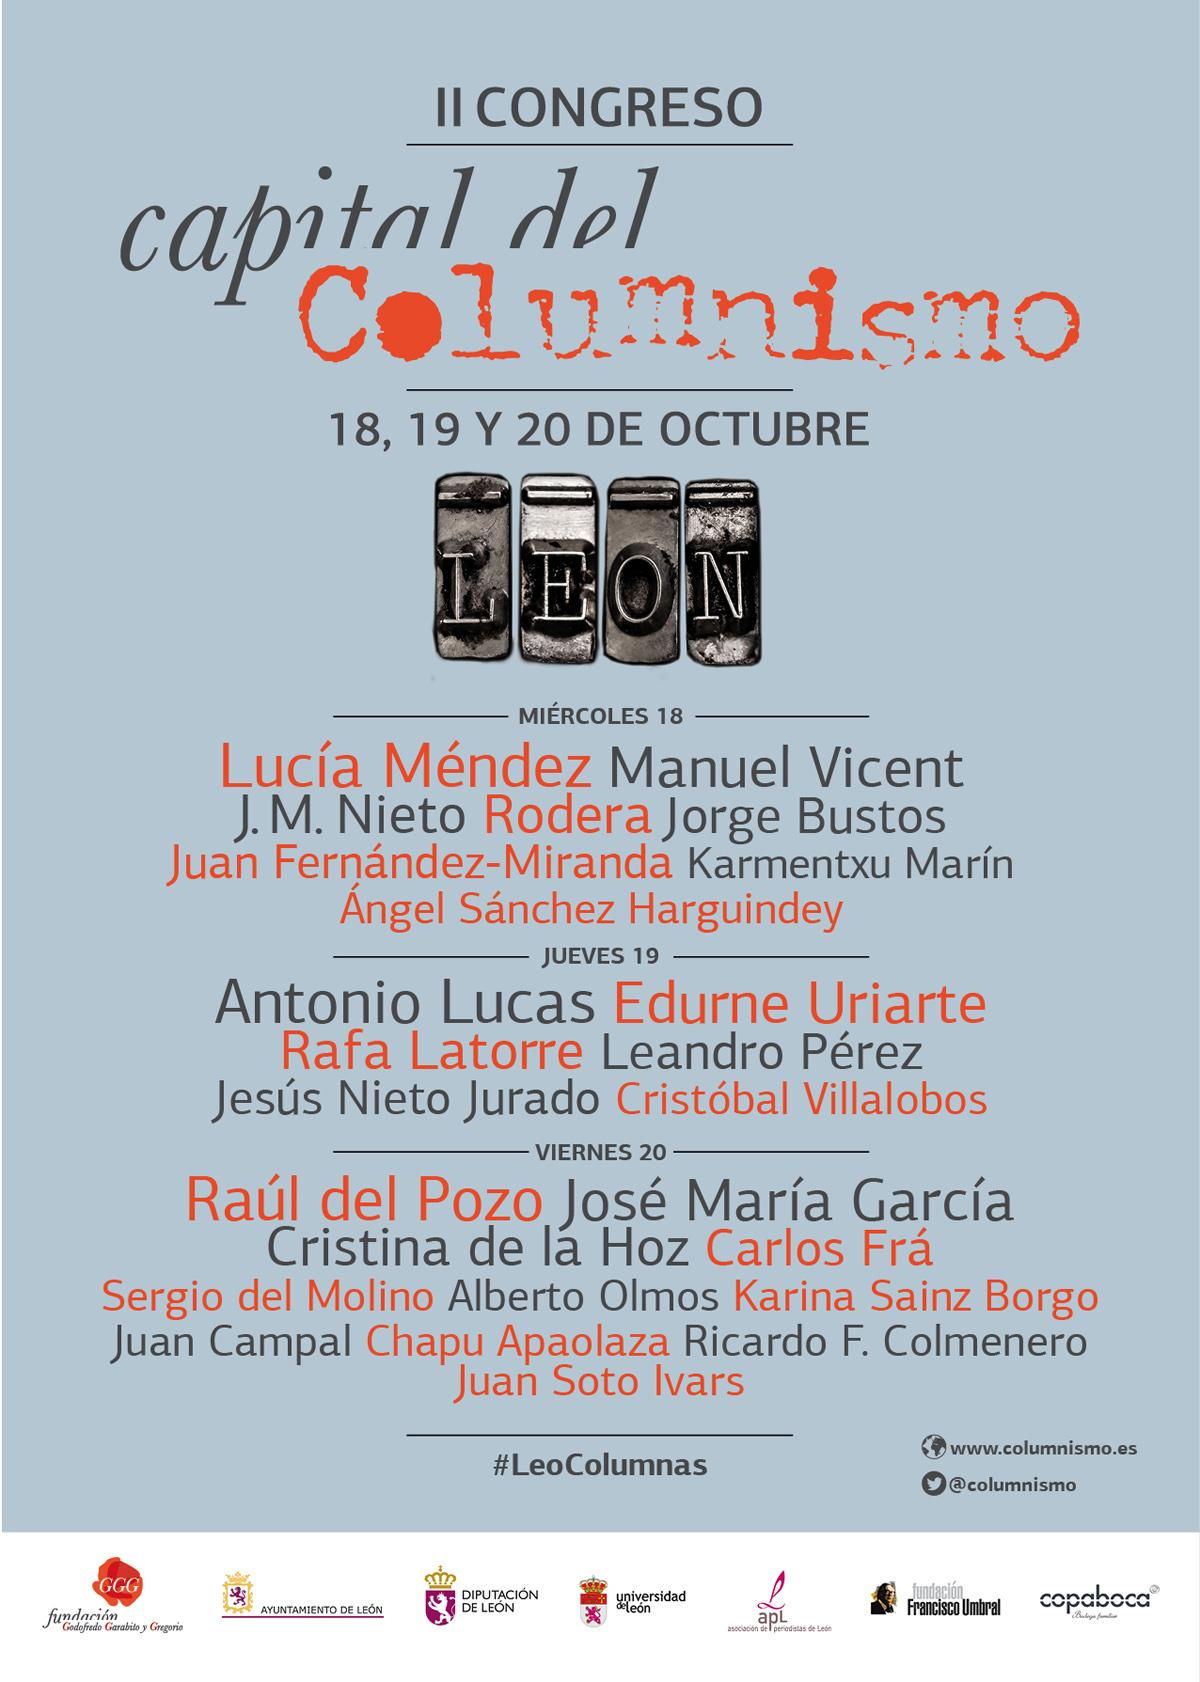 León, capital del columnismo español del 18 al 20 de octubre